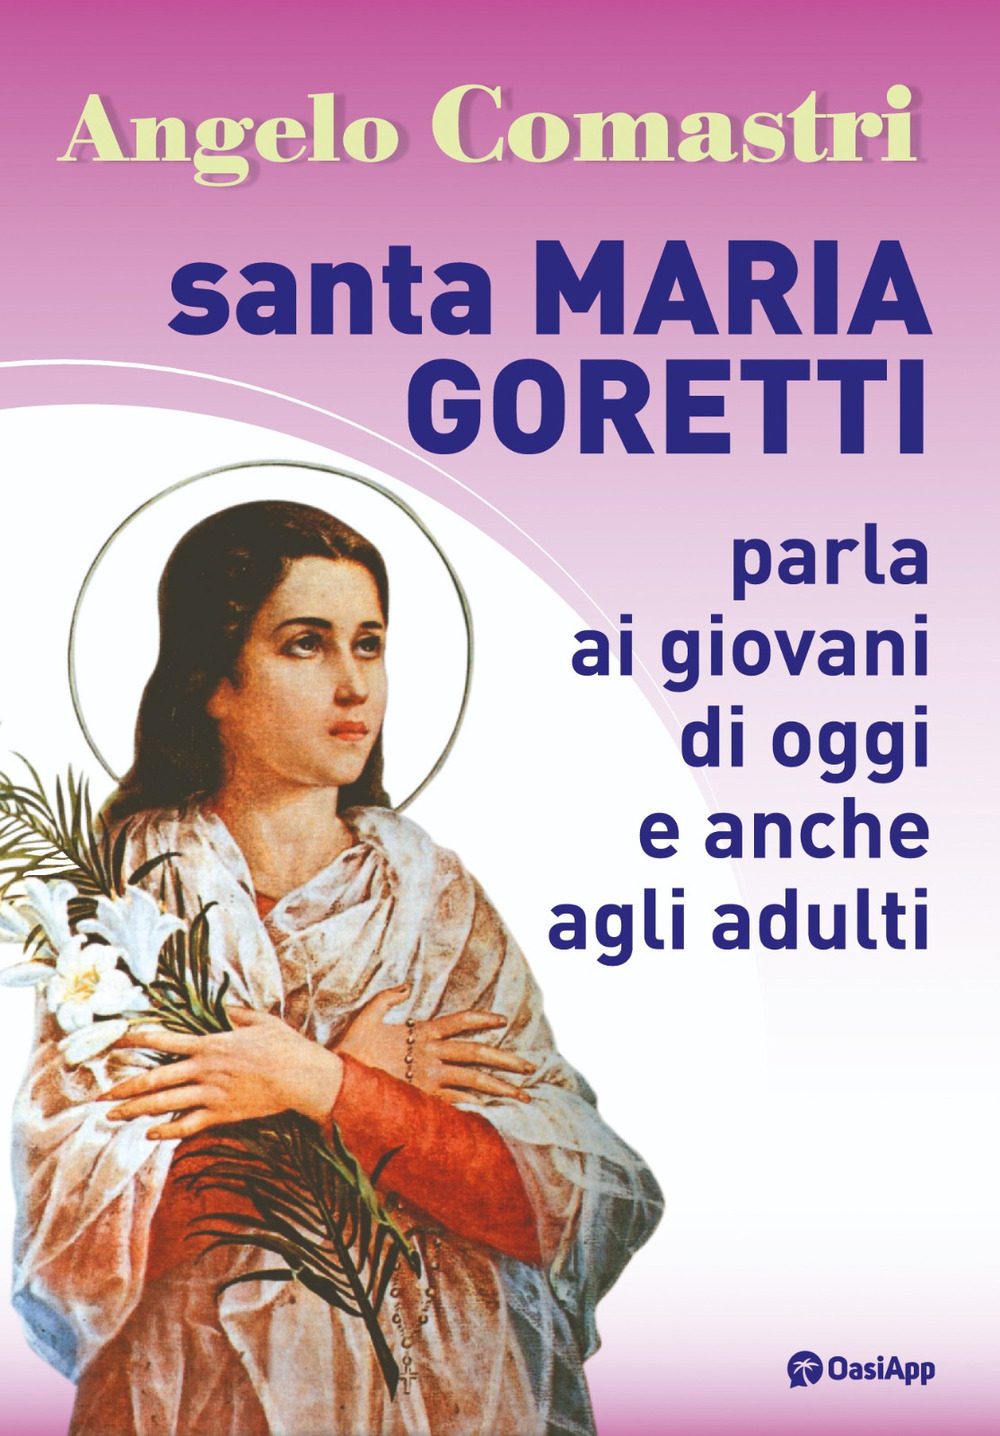 Santa Maria Goretti parla ai giovani di oggi e anche agli adulti